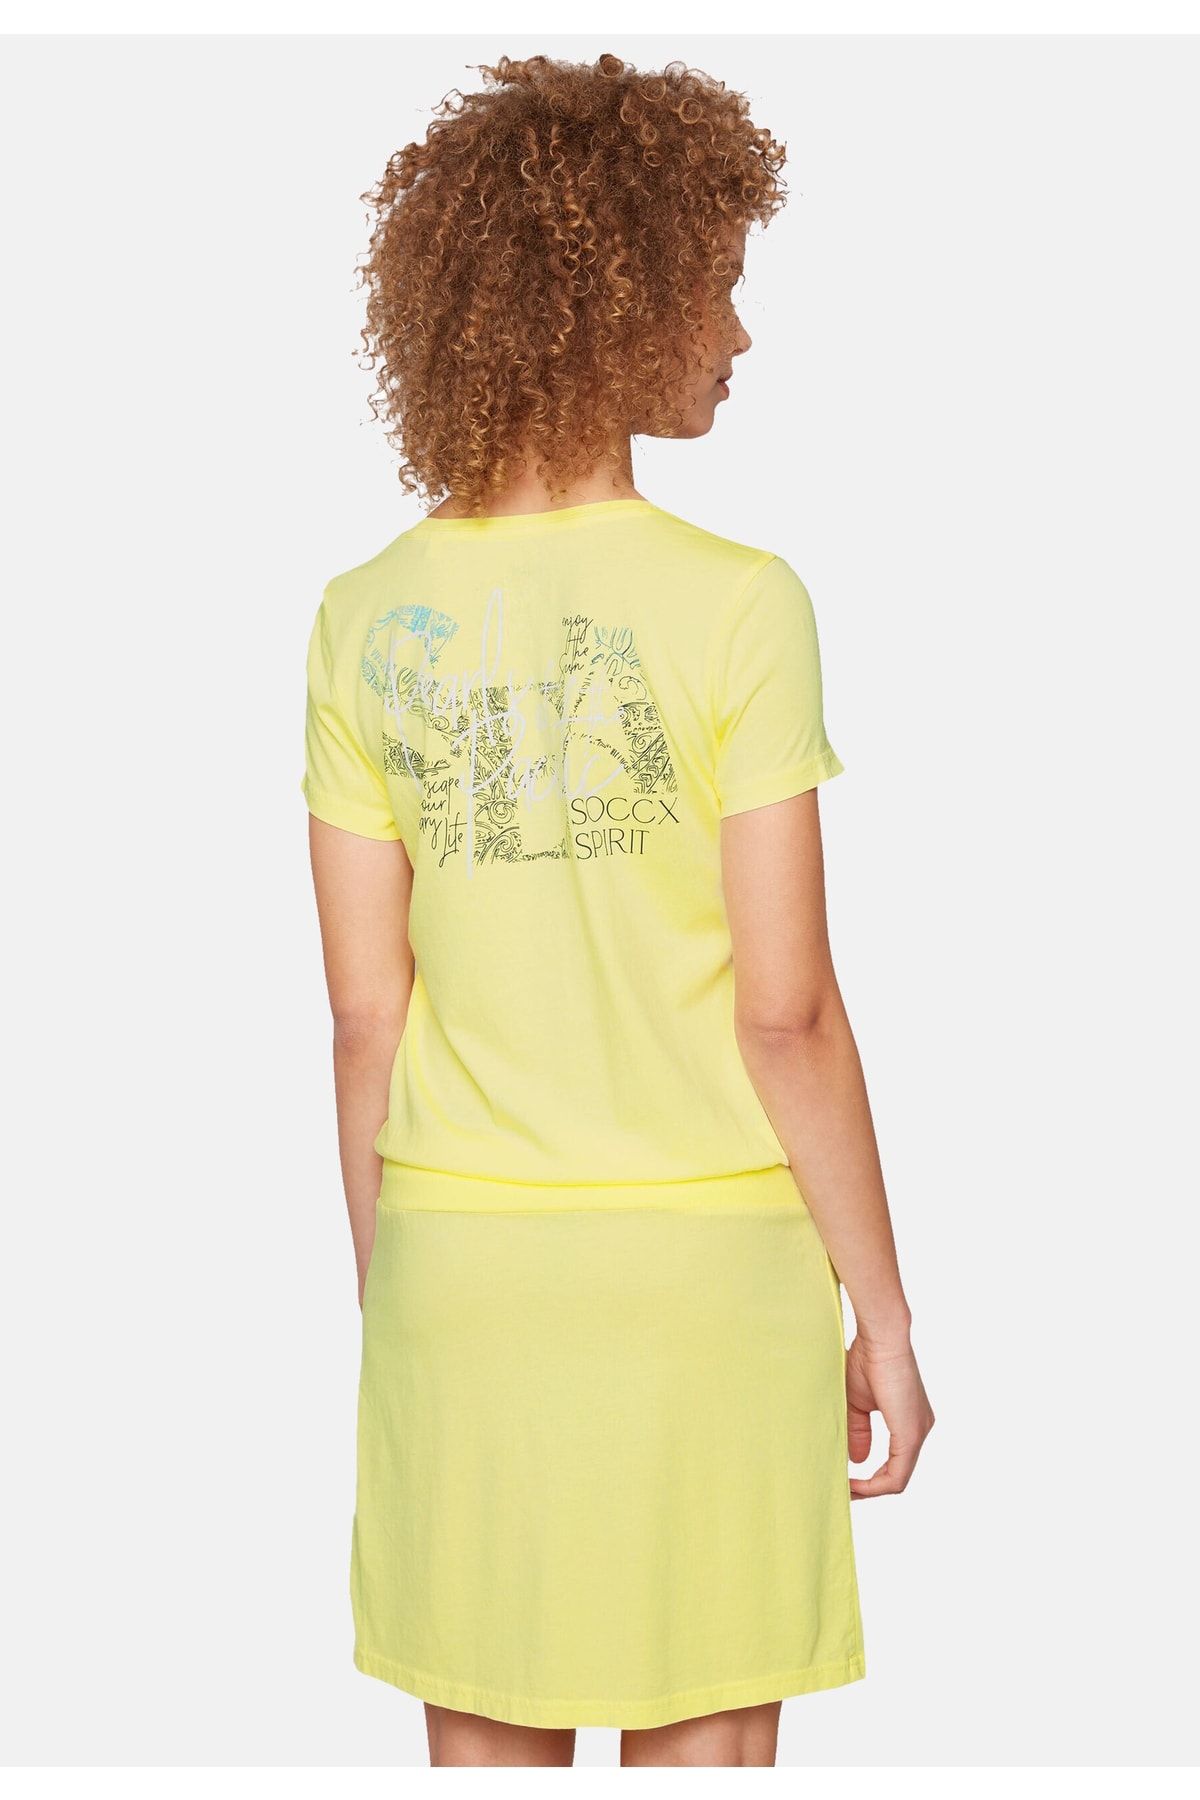 Soccx kleid T-Shirt-Kleid mit geripptem Print Trendyol Label Taillenbund, Rundhalsausschnitt - und